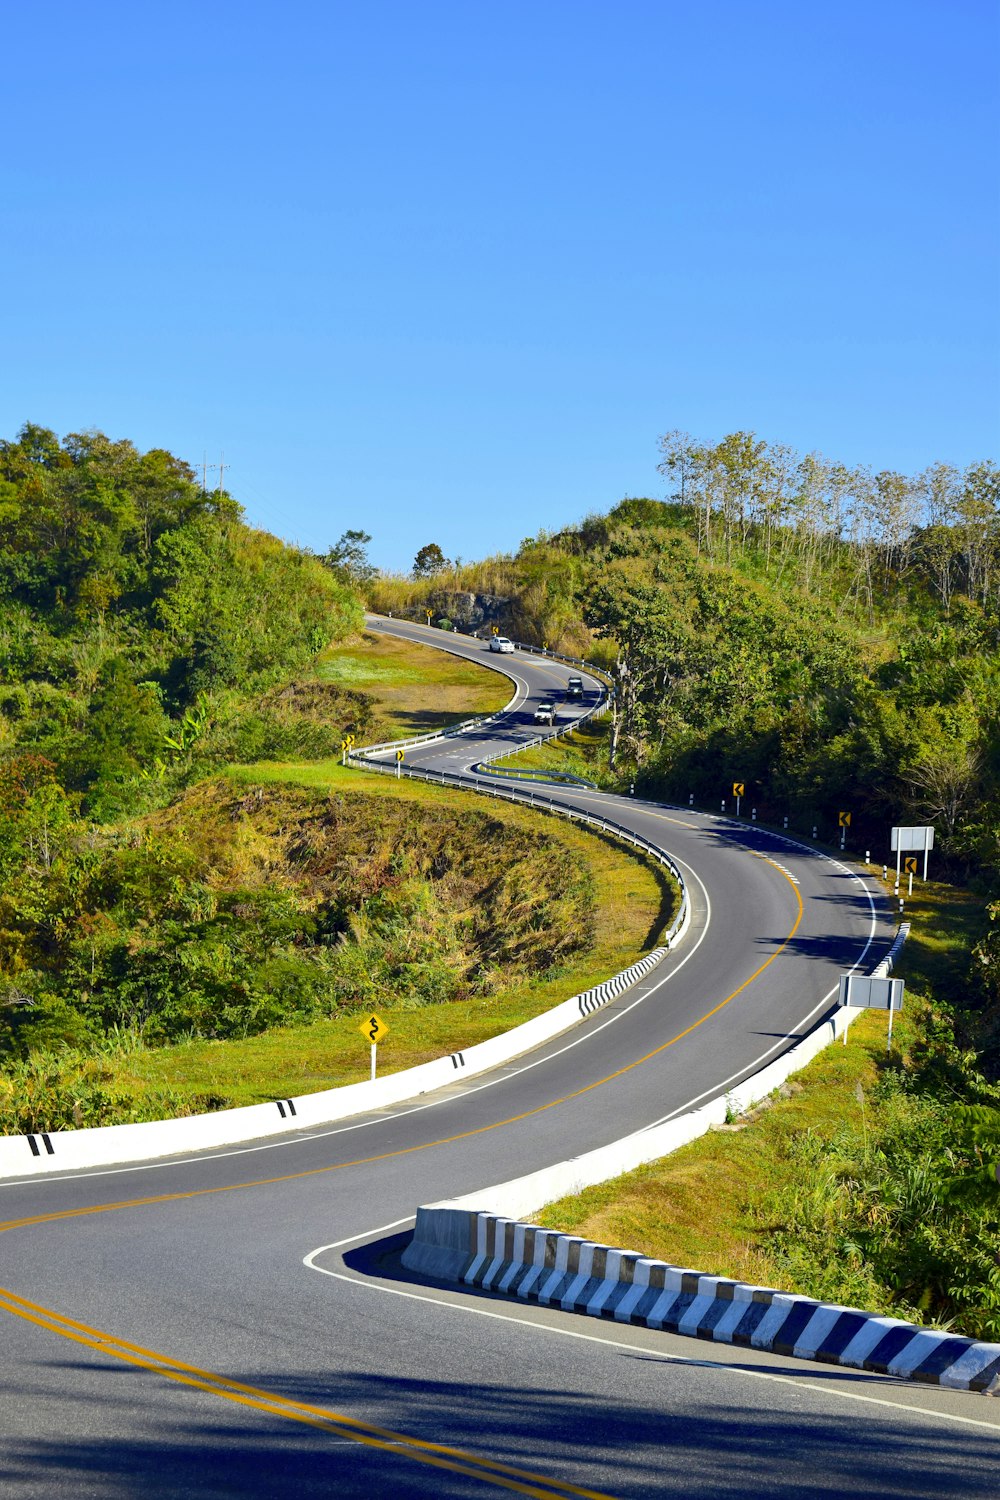 Una strada curva nel mezzo di una collina verde e lussureggiante